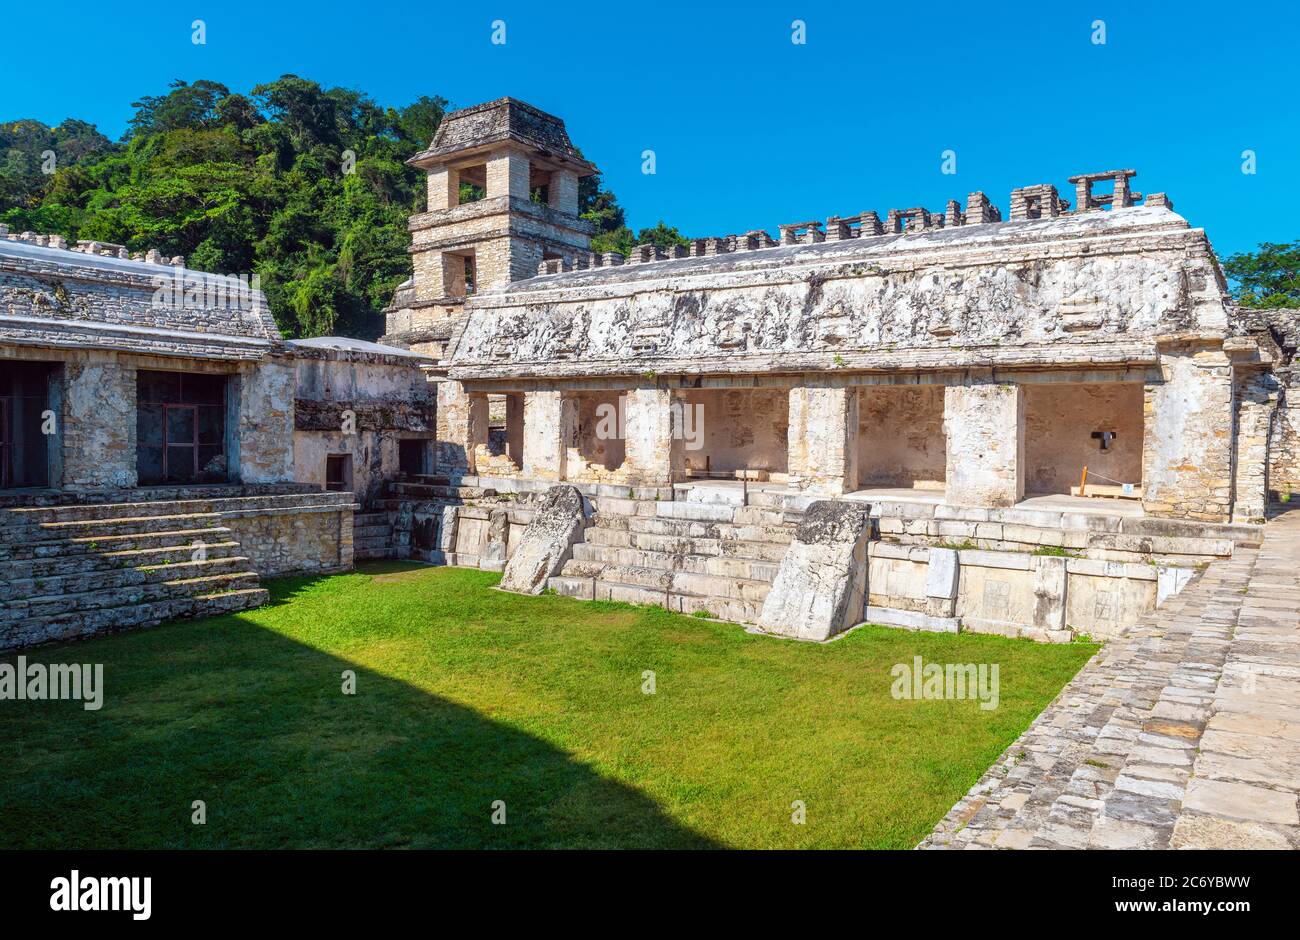 El Palacio en el sitio arqueológico maya de Palenque, Chiapas, México. Foto de stock